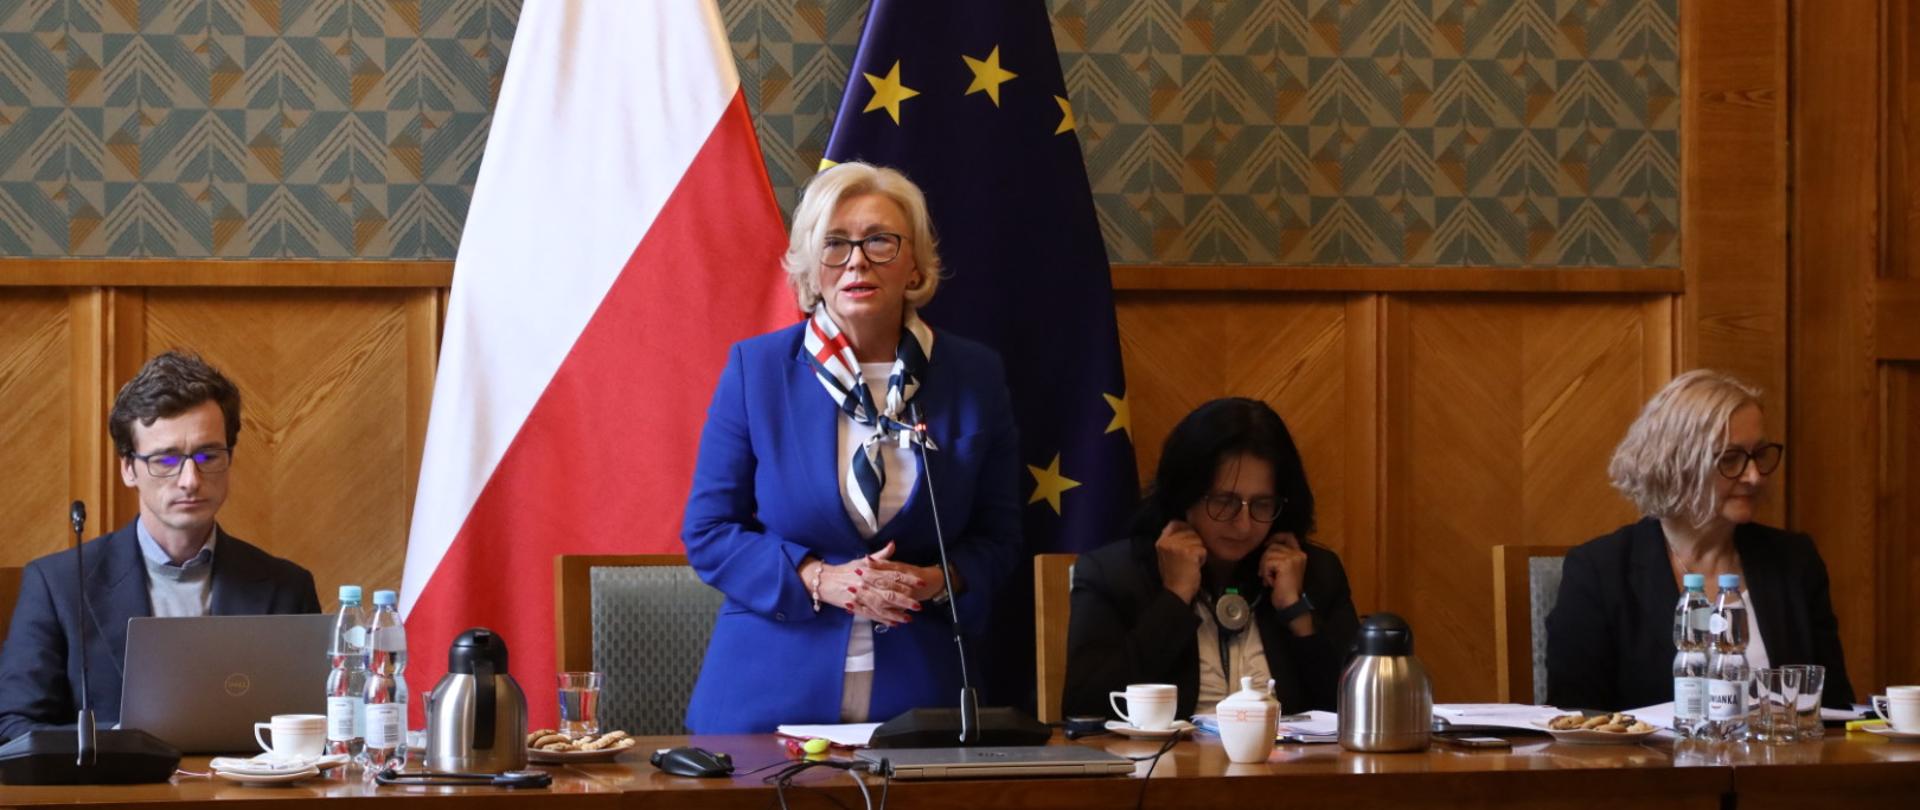 Wiceminister Machałek w niebieskim ubraniu stoi za stołem, za nią ściana w zielony wzorek i flagi Polski i UE.